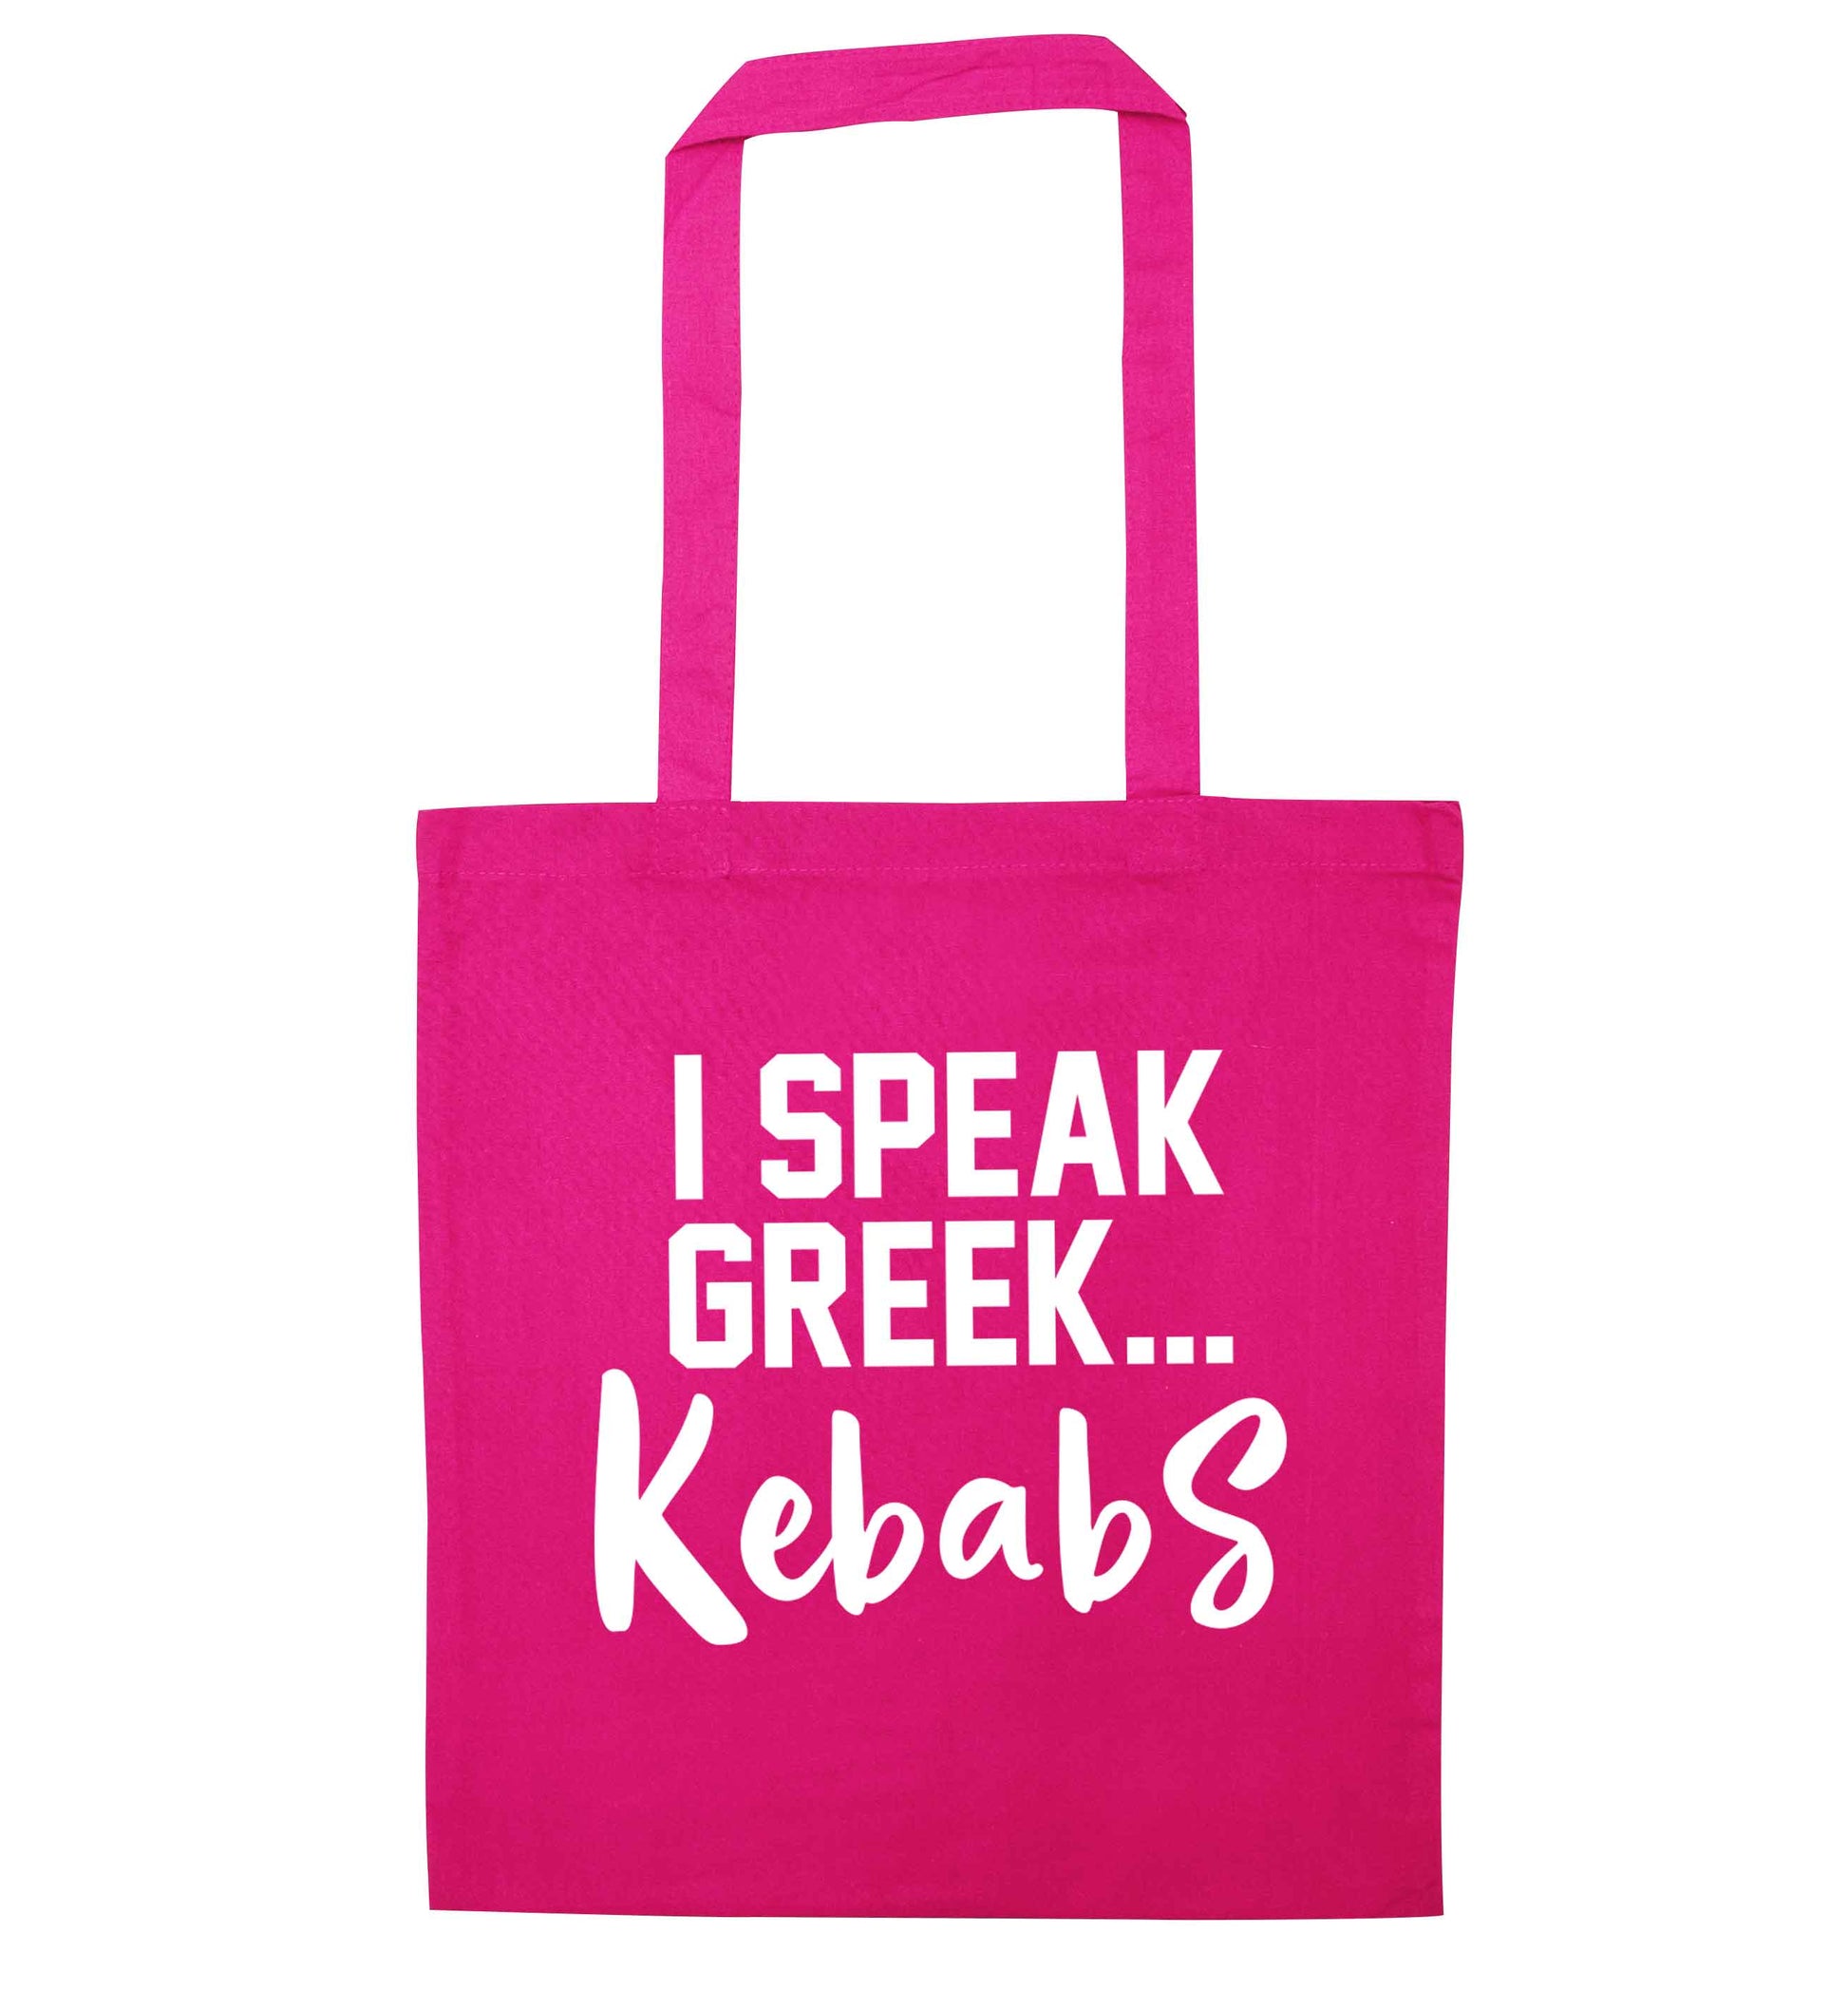 I speak Greek...kebabs pink tote bag